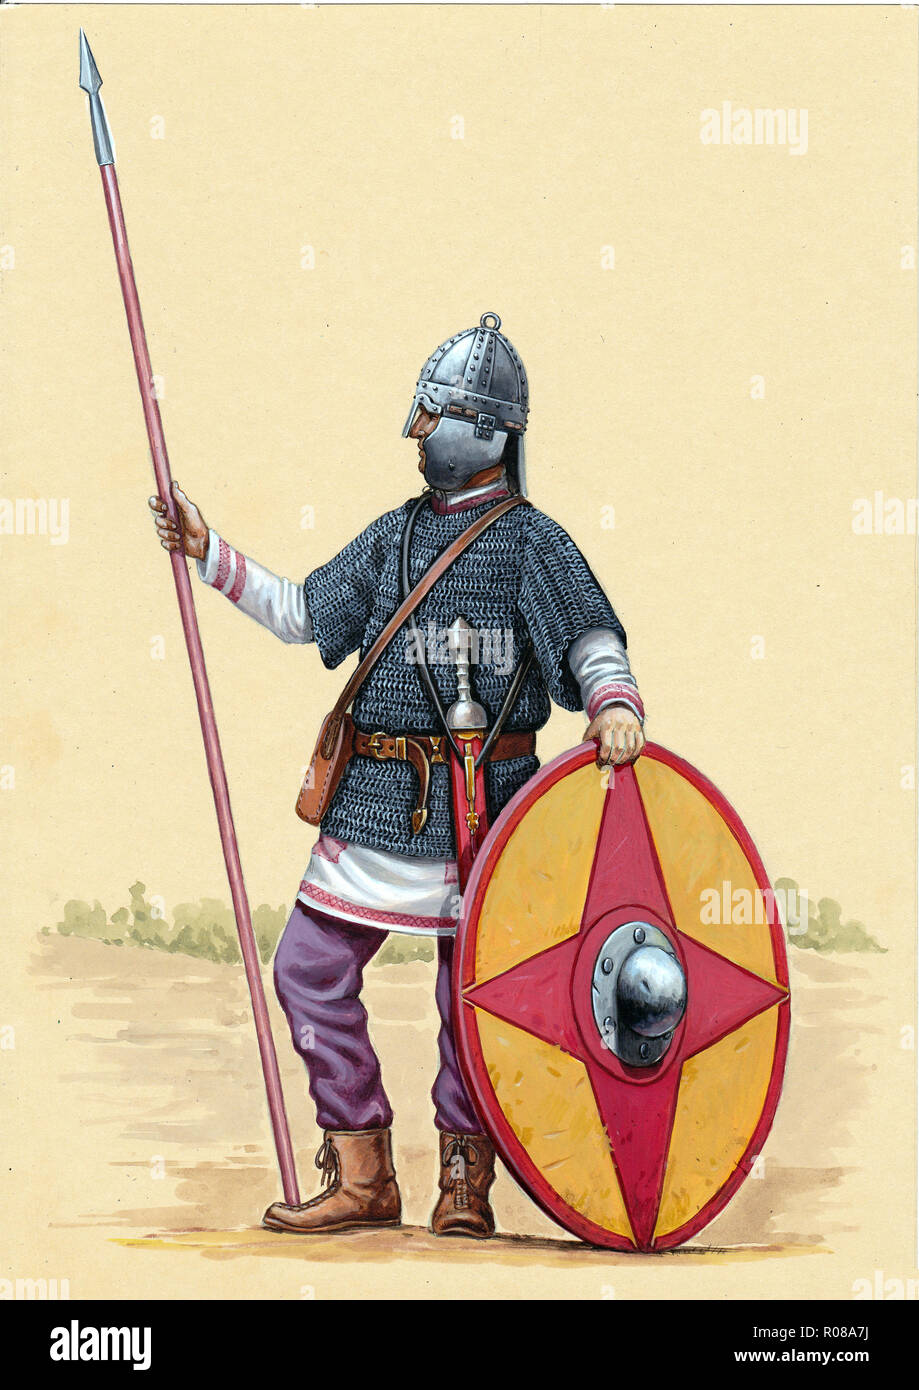 La fin de soldat romain. Illustration des légionnaires romains. Banque D'Images